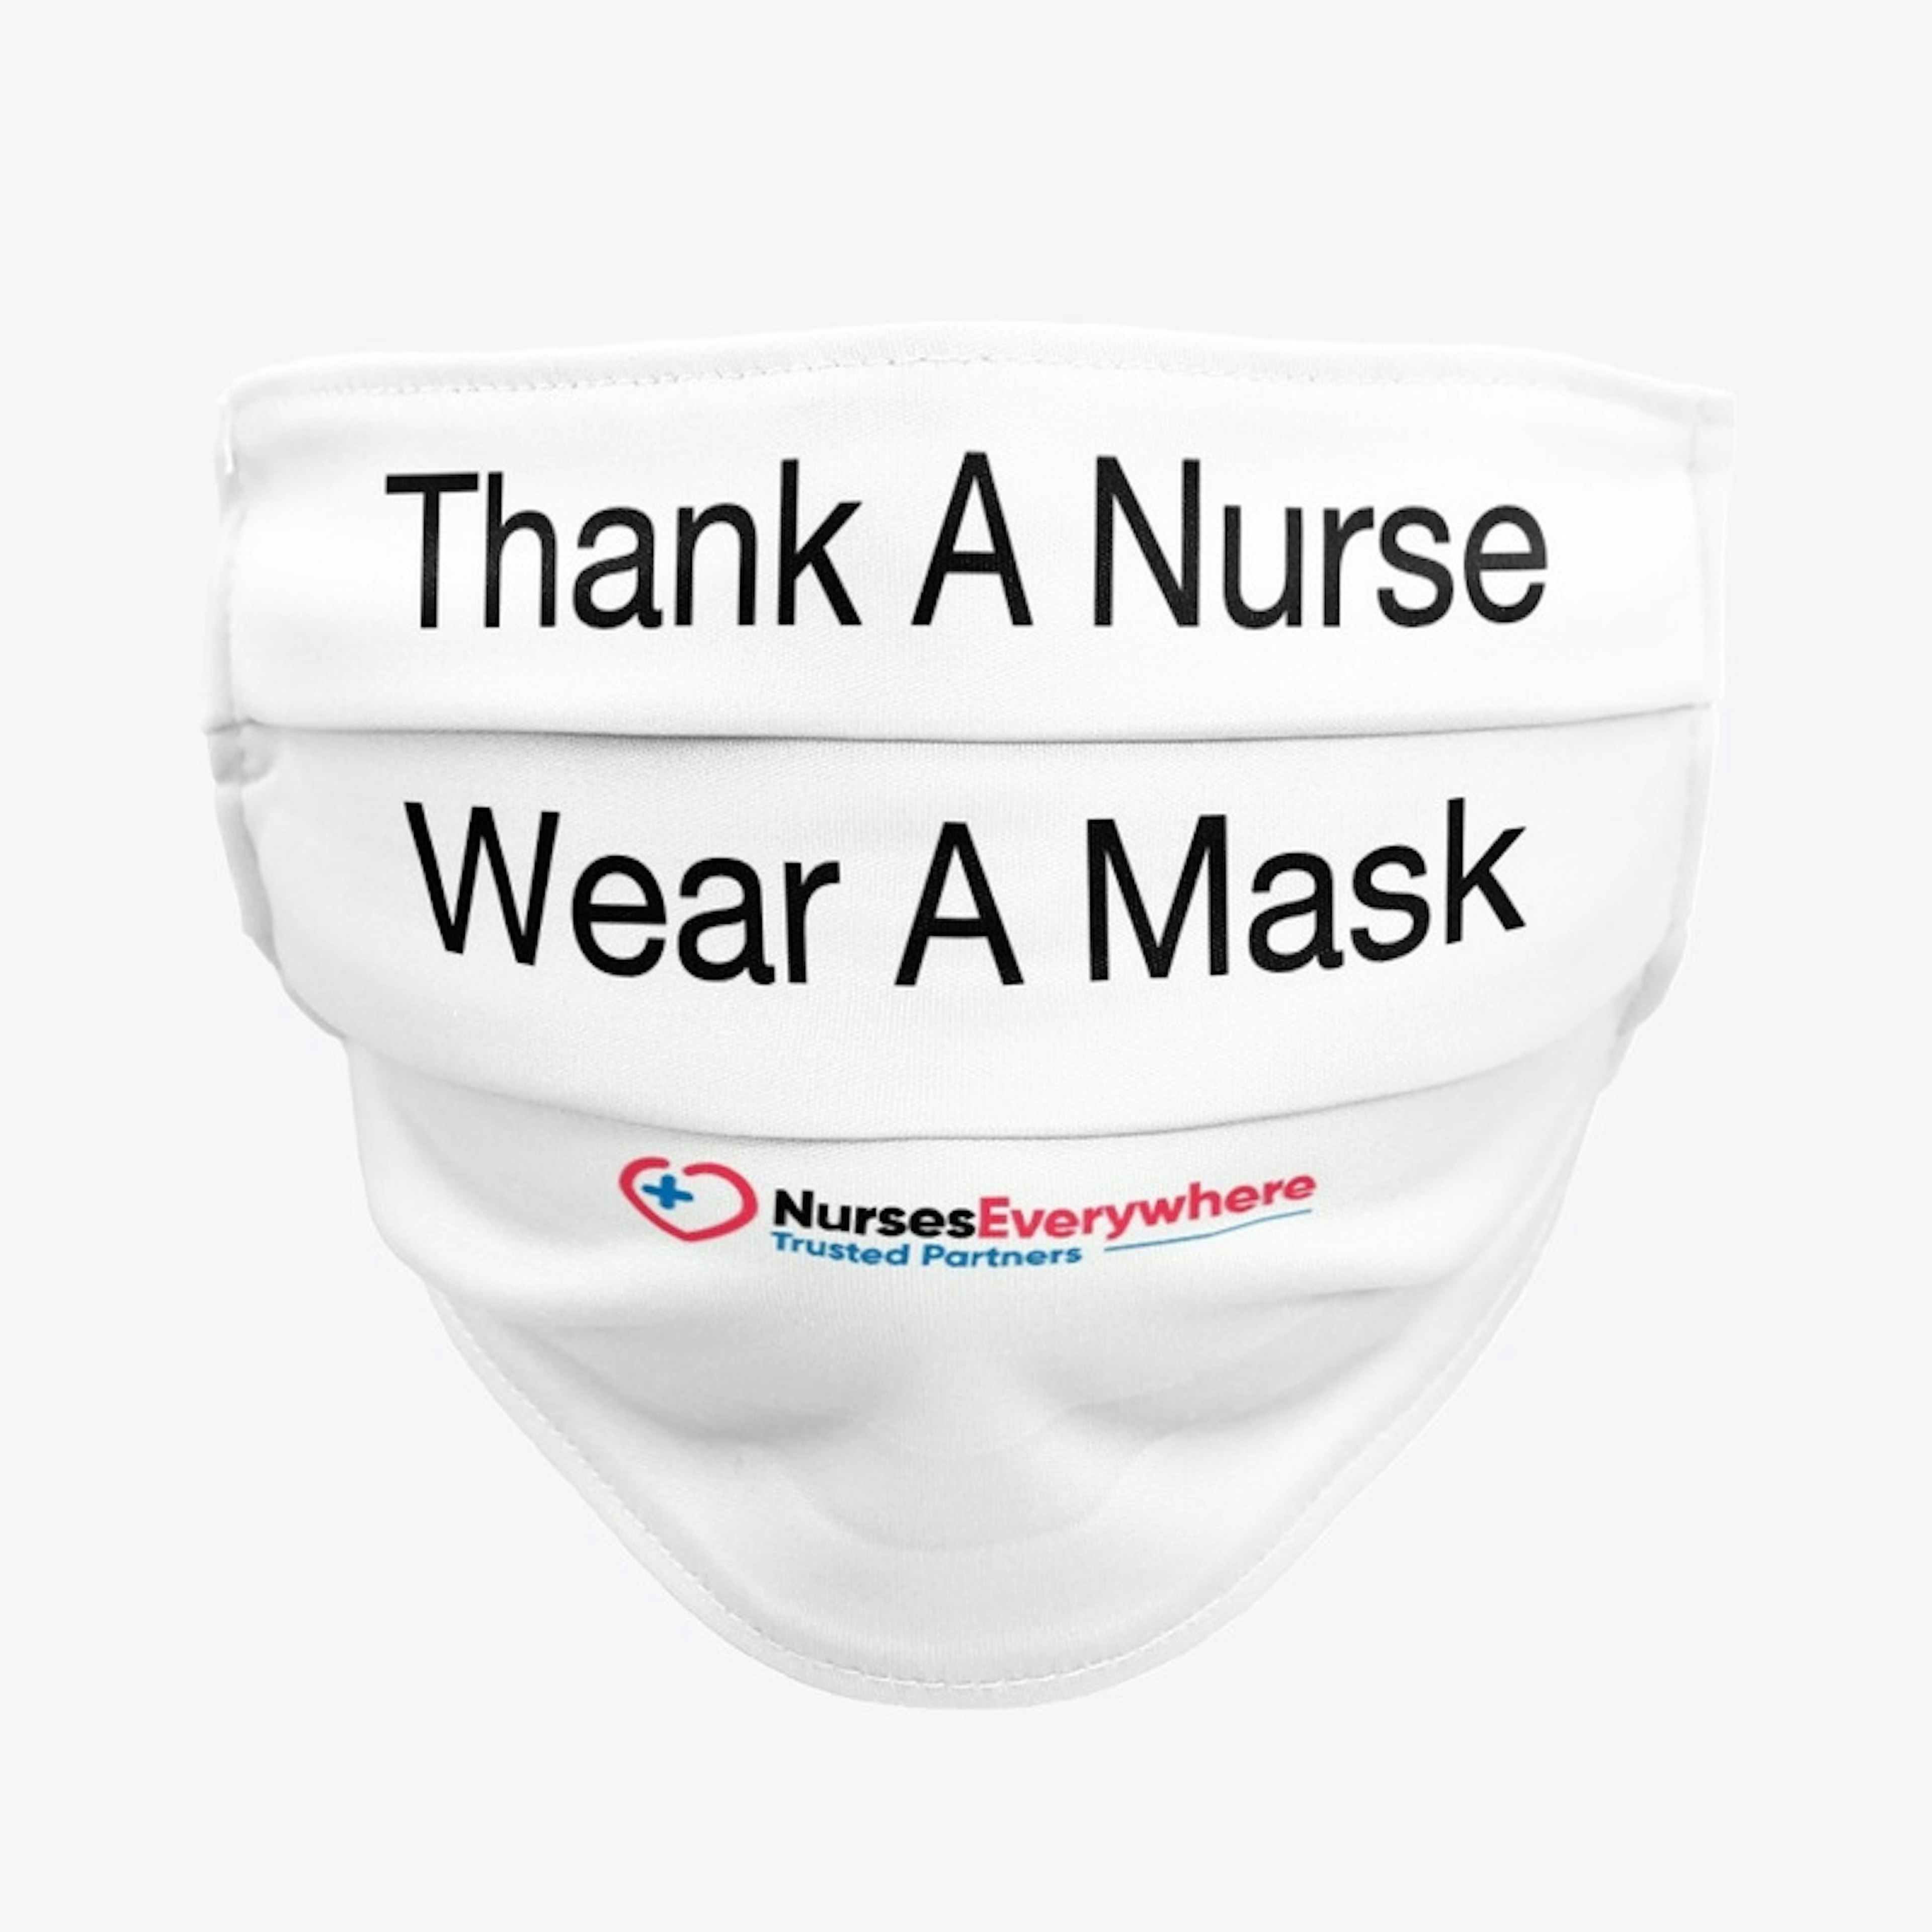 Thank A Nurse Mask